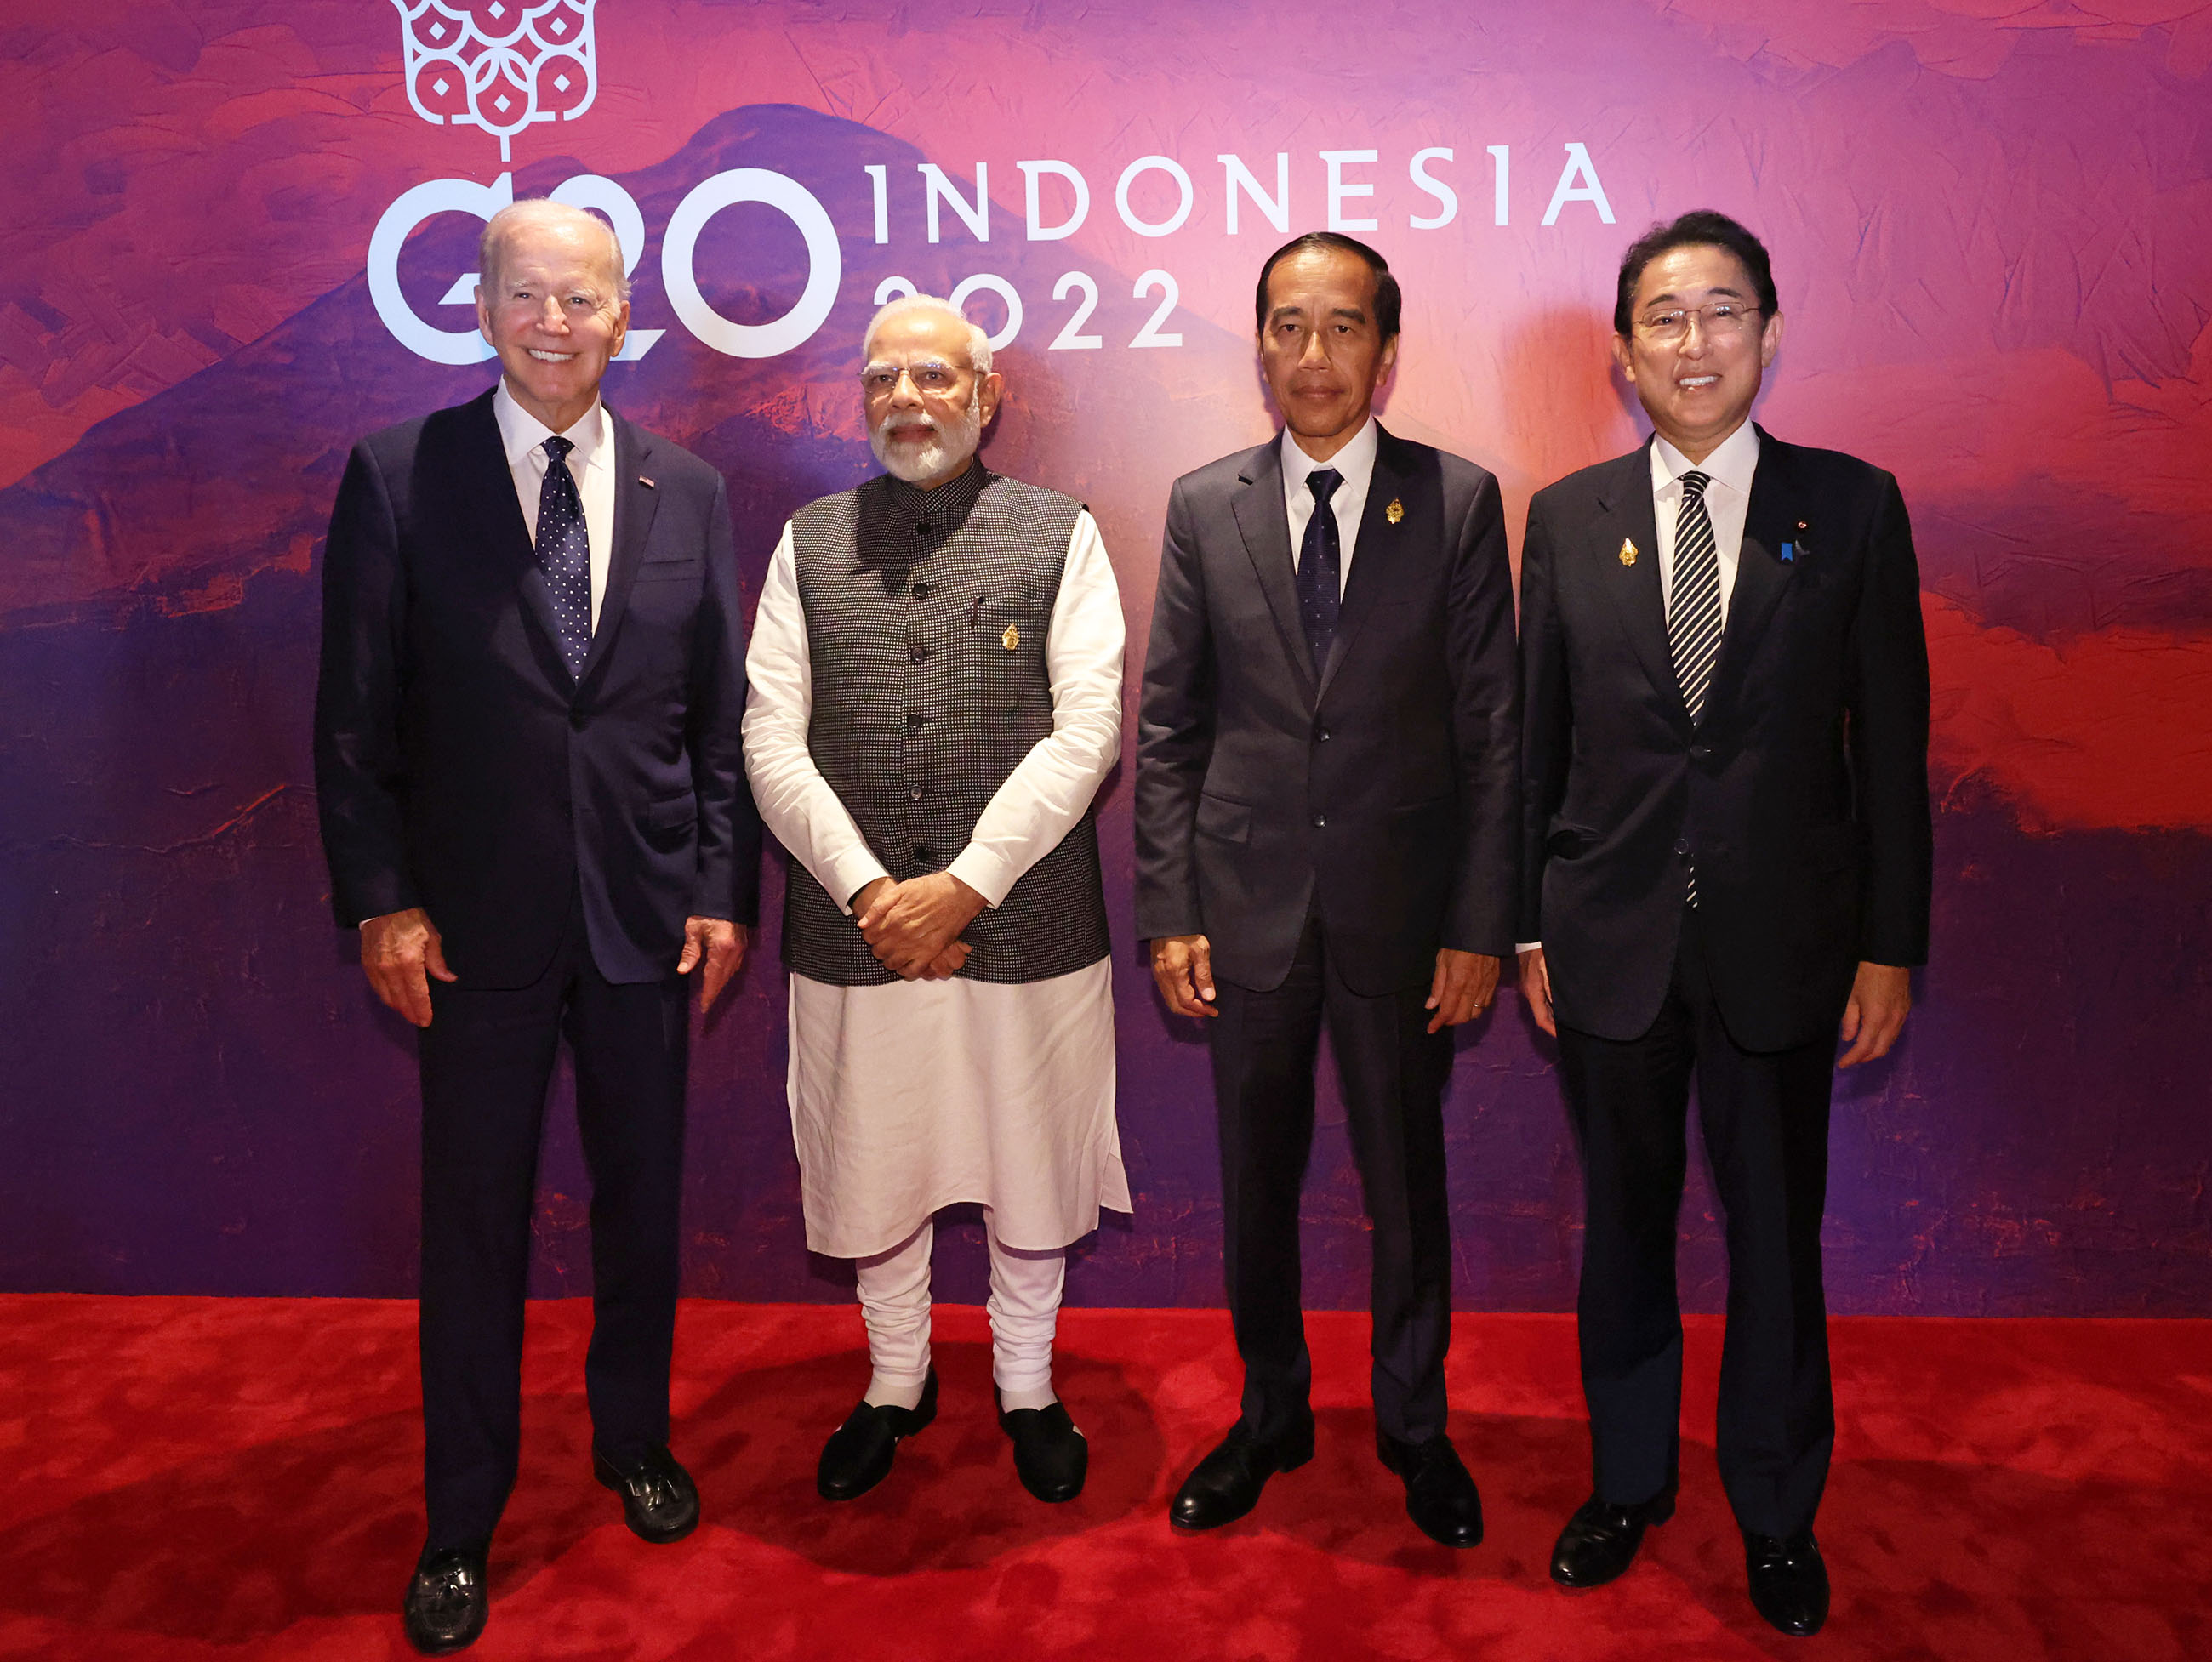 ジョセフ・バイデン米国大統領、ナレンドラ・モディ・インド首相及びジョコ・ウィドド・インドネシア大統領との写真撮影